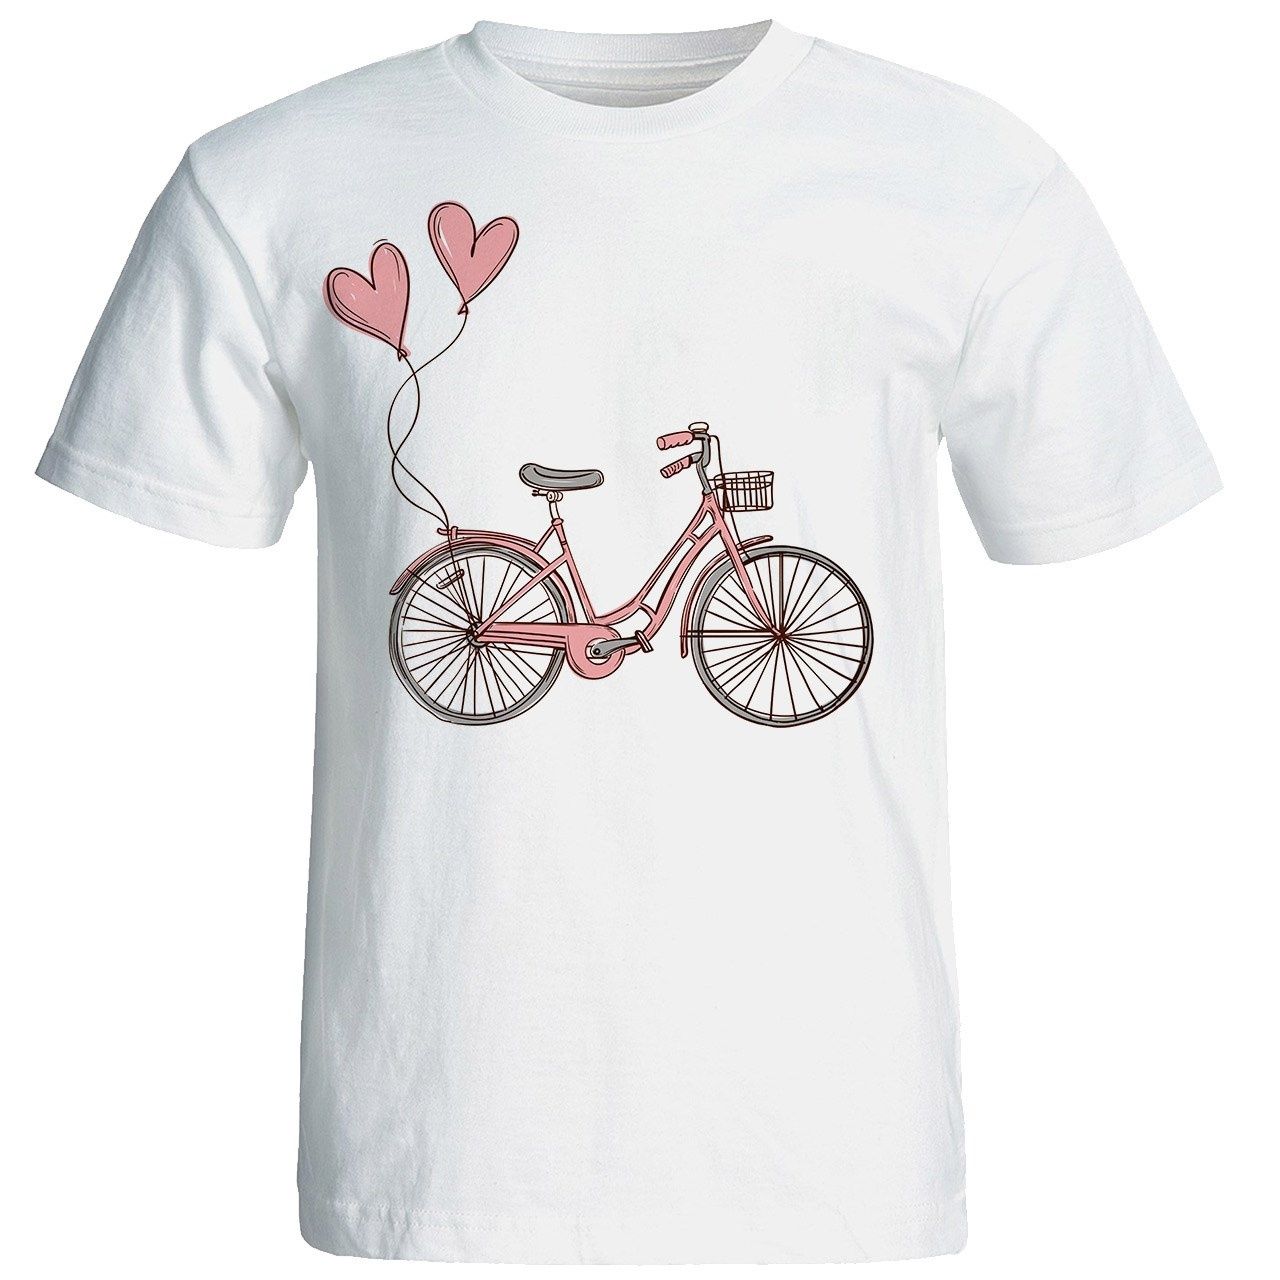 تی شرت آستین کوتاه زنانه شین دیزاین طرح دوچرخه کد 4457 -  - 1